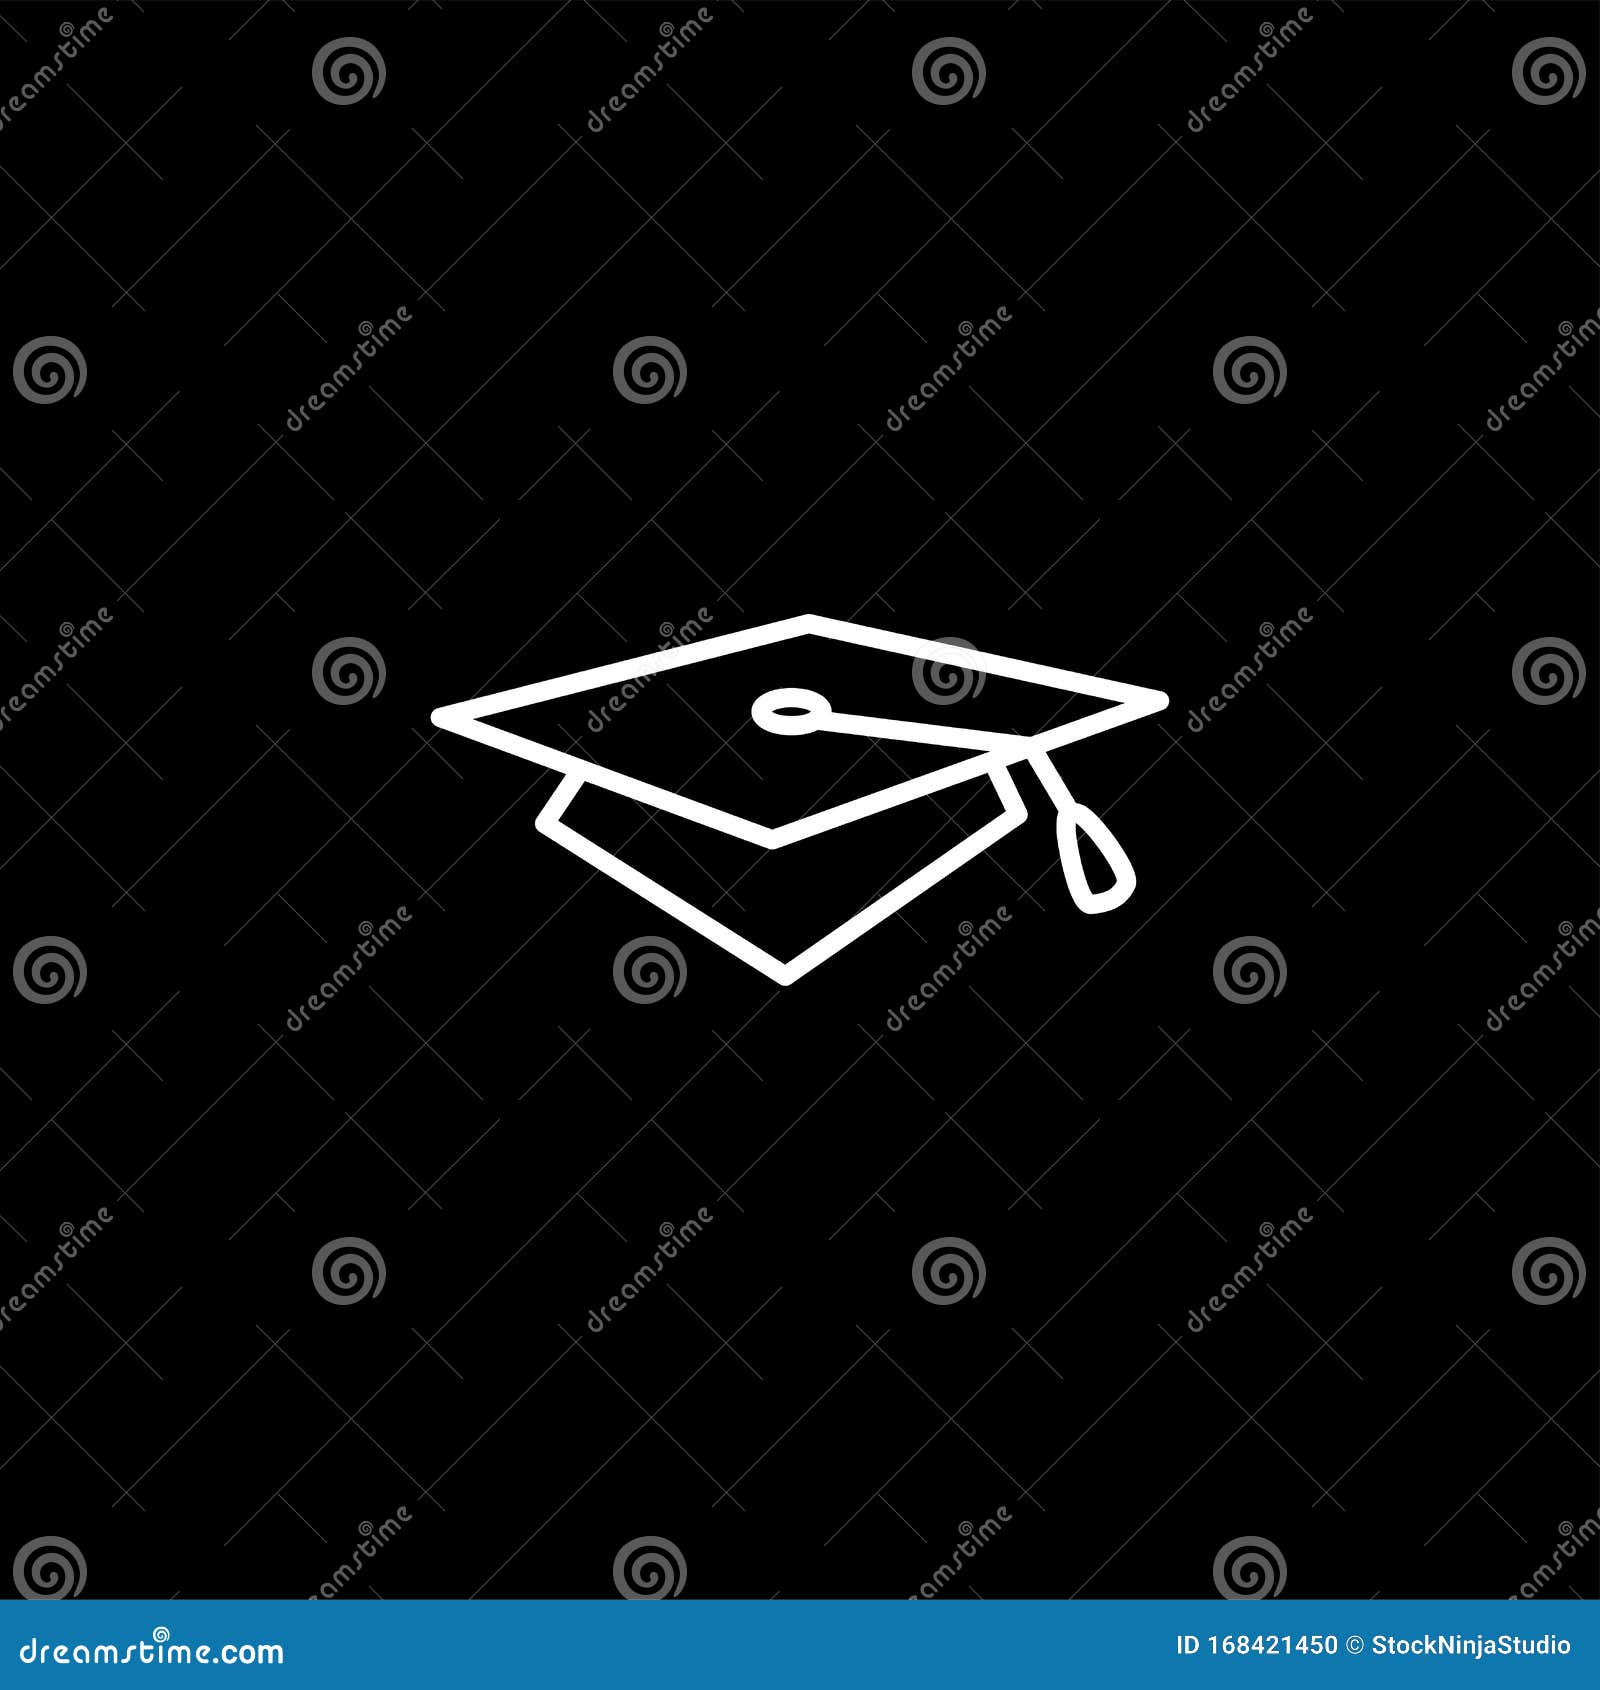 Biểu tượng nón tốt nghiệp trên nền đen - Sự kết hợp hoàn hảo giữa biểu tượng nón tốt nghiệp và nền đen sẽ mang lại một bức ảnh tuyệt vời cho buổi lễ tốt nghiệp của bạn. Hãy xem ngay!